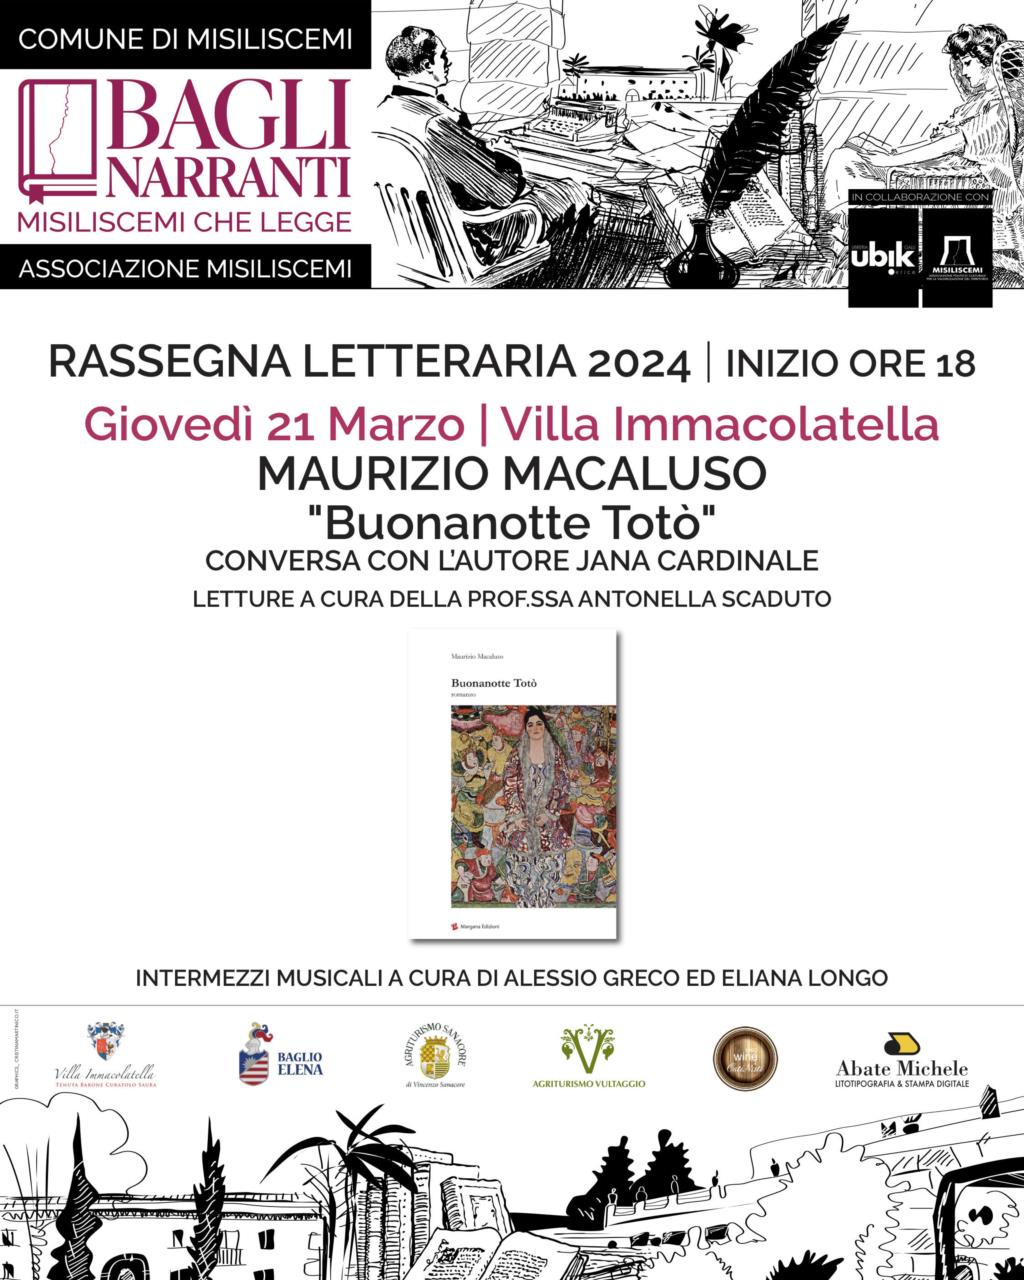 Alla Rassegna 'Bagli Narranti' Maurizio Macaluso presenta il suo nuovo libro 'Buonanotte Totò'